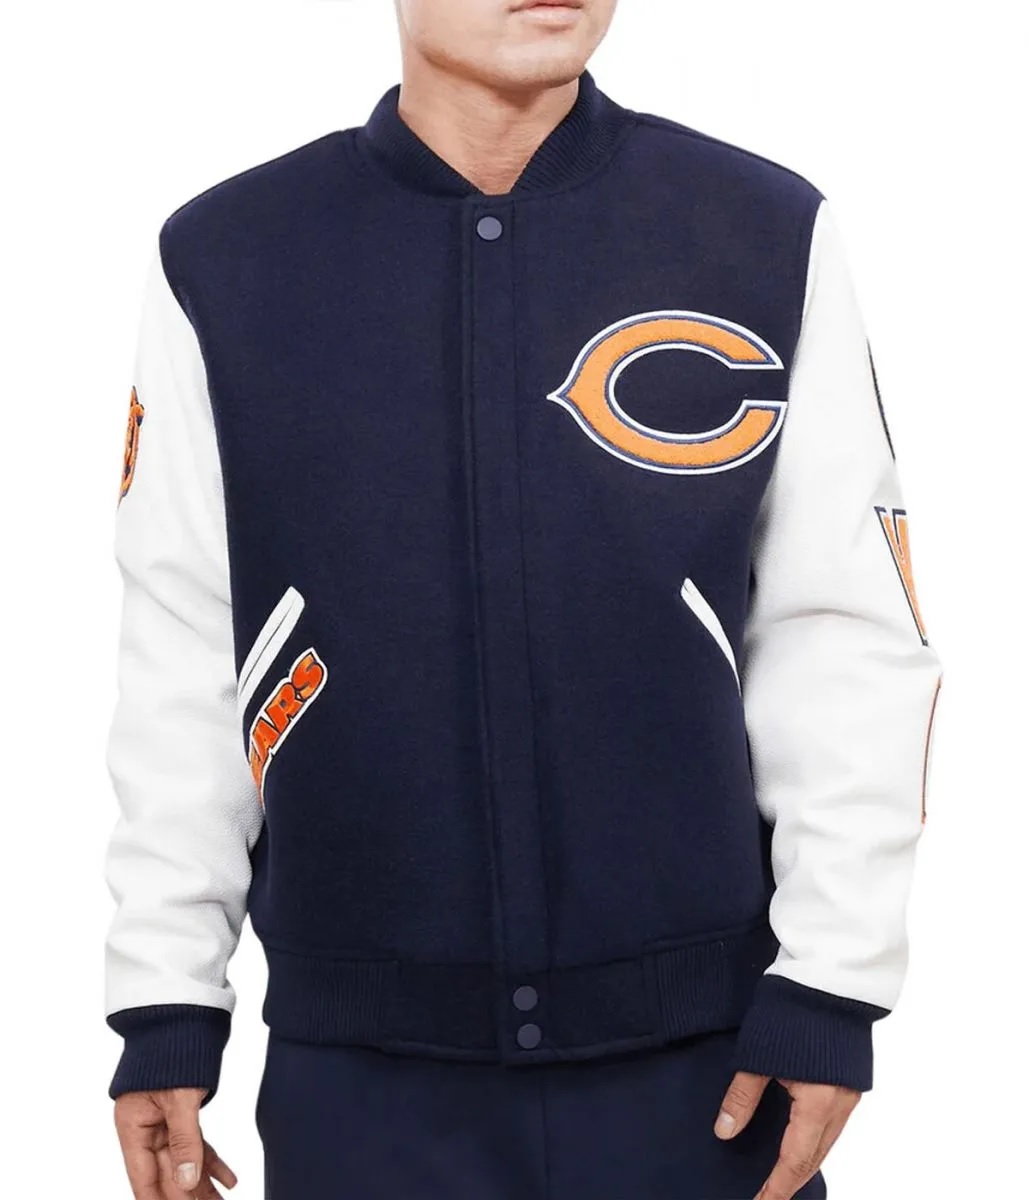 Chicago Bears Letterman Navy Blue White Jacket